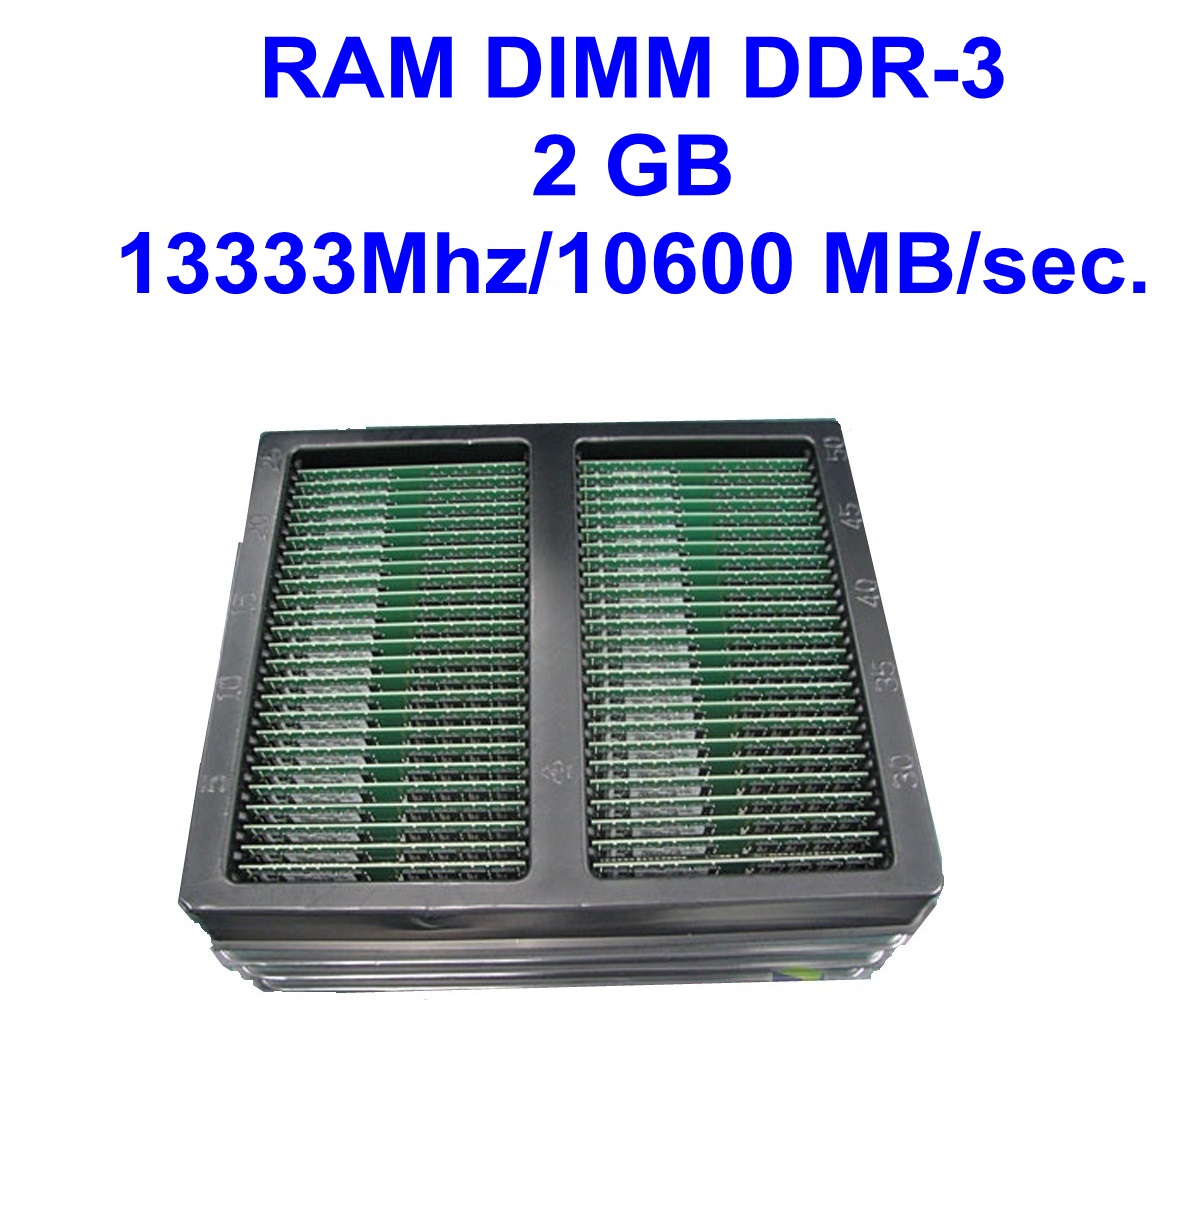 DIMM DDR-3 2 GB 1333Mhz/10600 MB/sec.